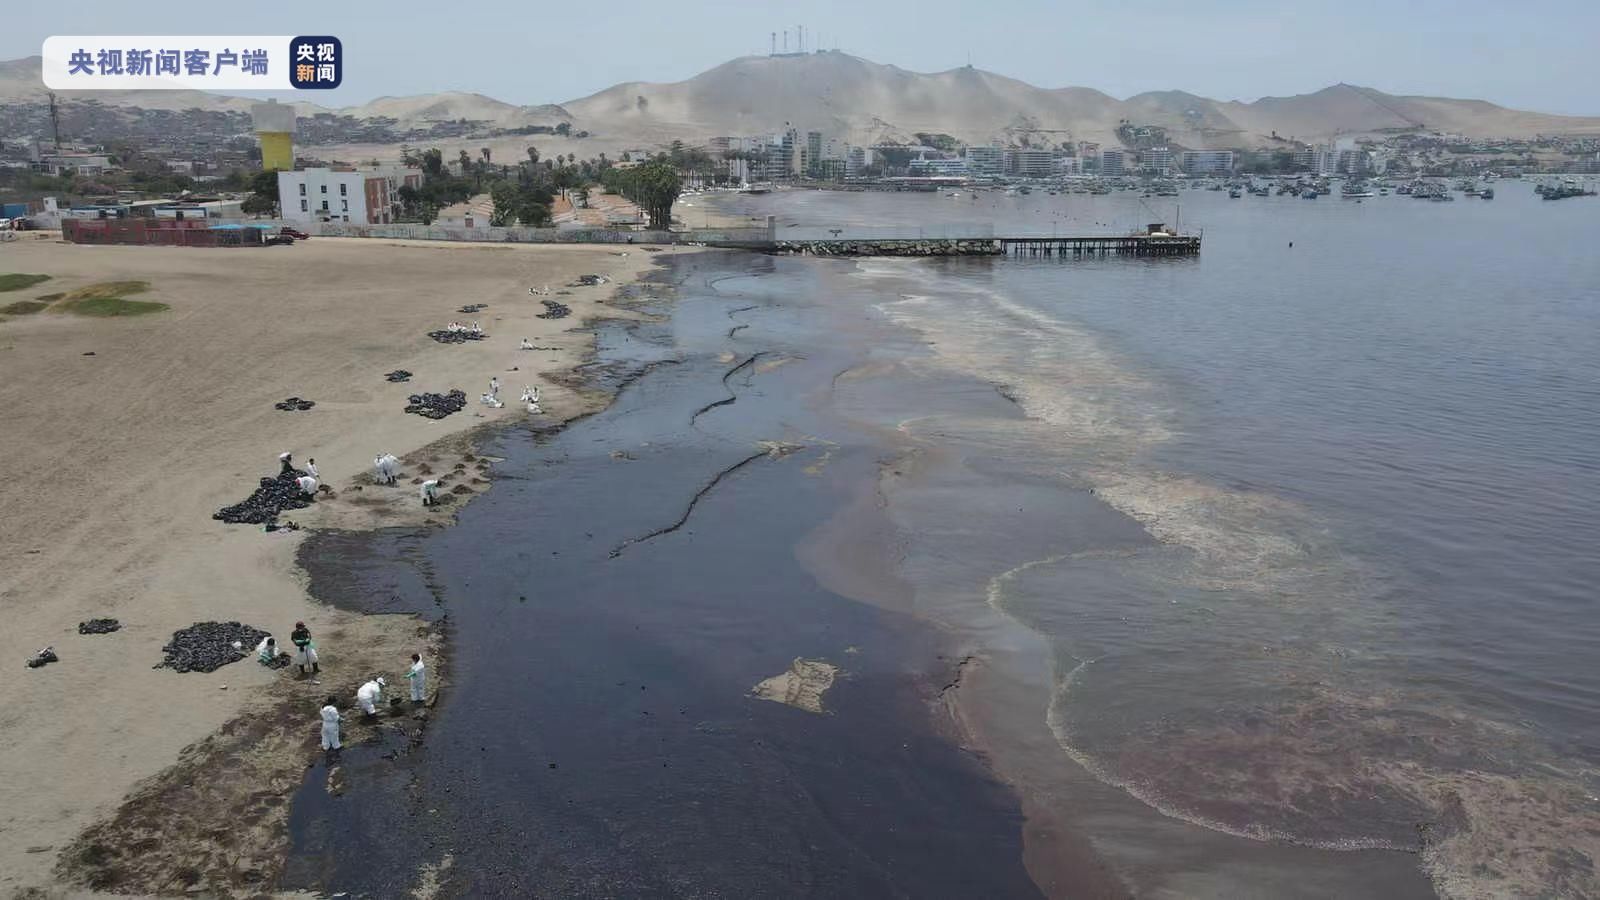 原油|秘鲁被泄漏原油污染海陆面积近900公顷 旅游业遭重创